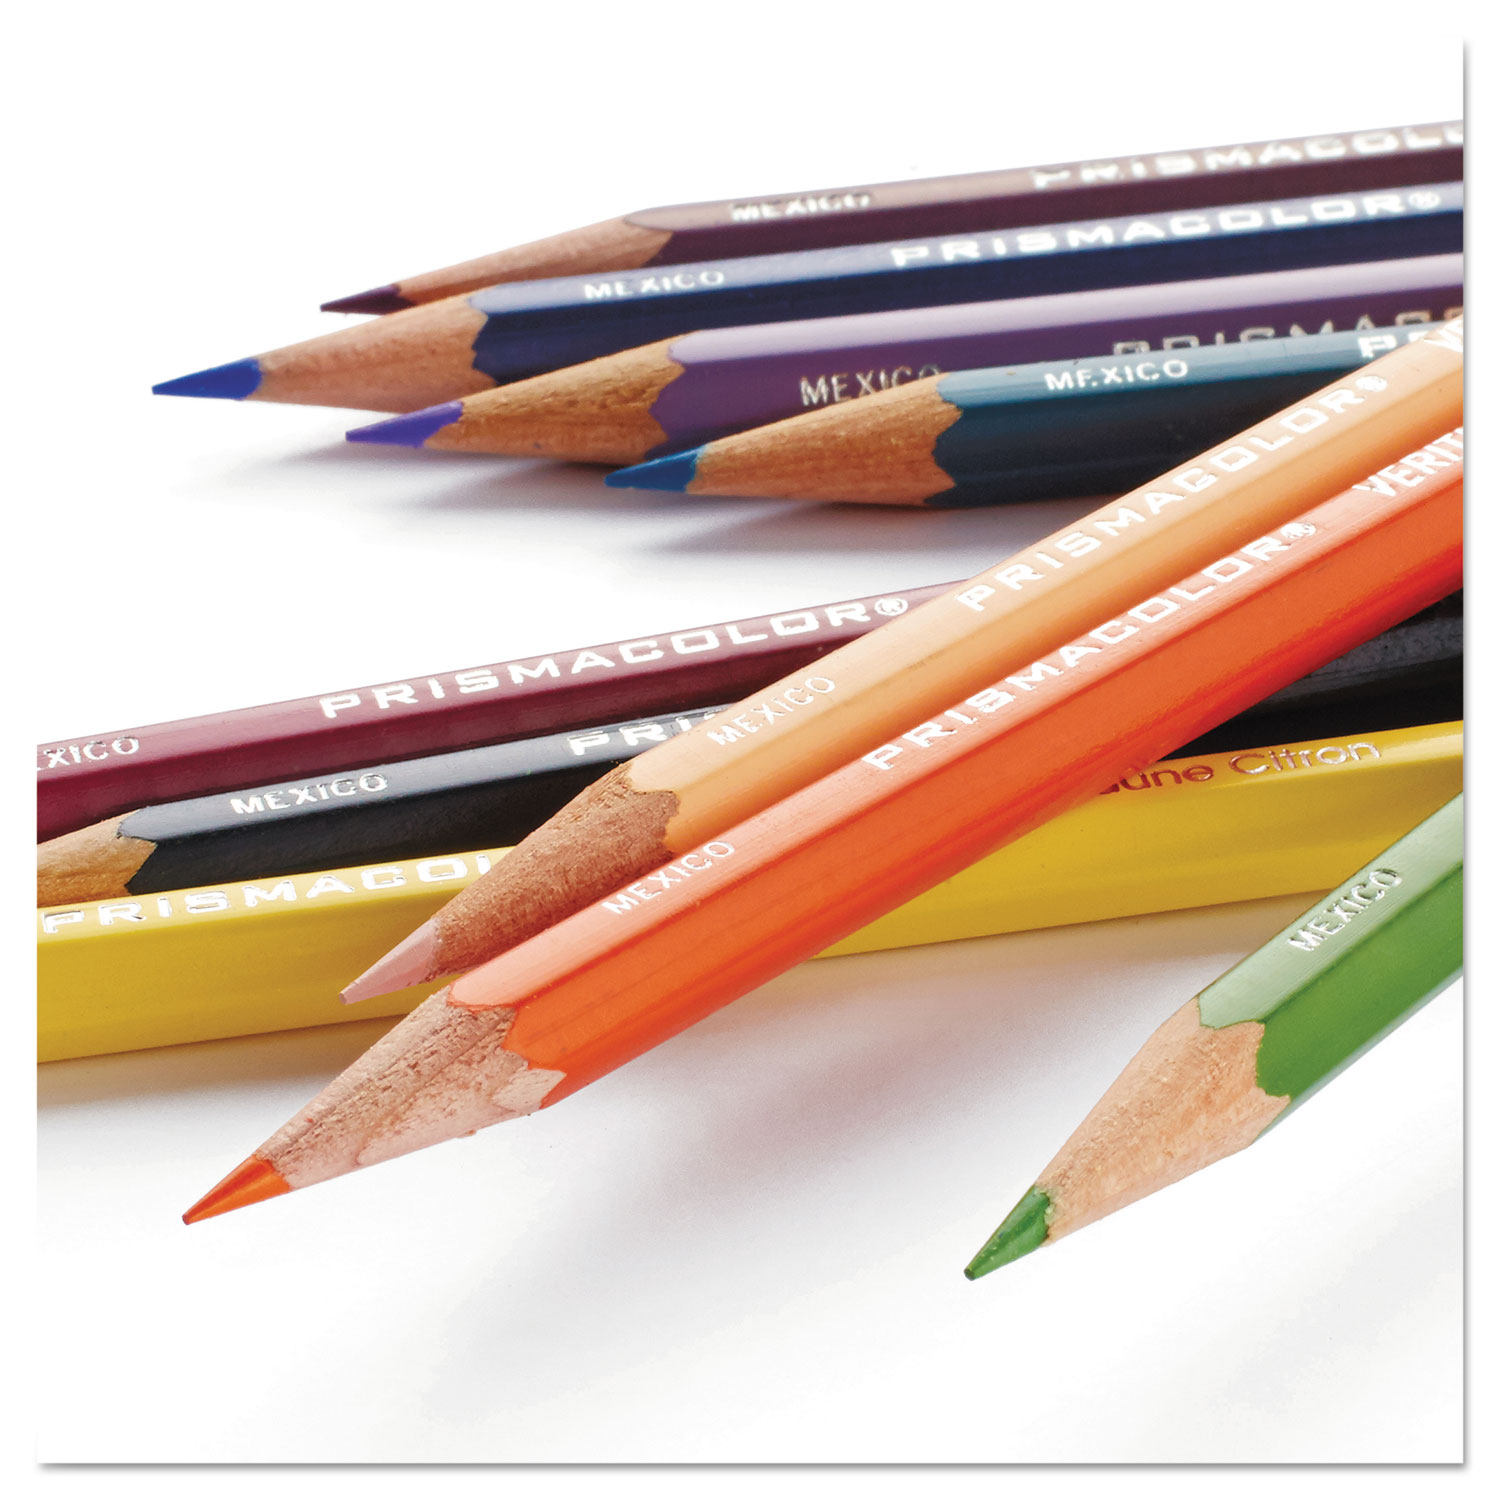 Prismacolor Premier Themed Colored Pencil Set, Landscape